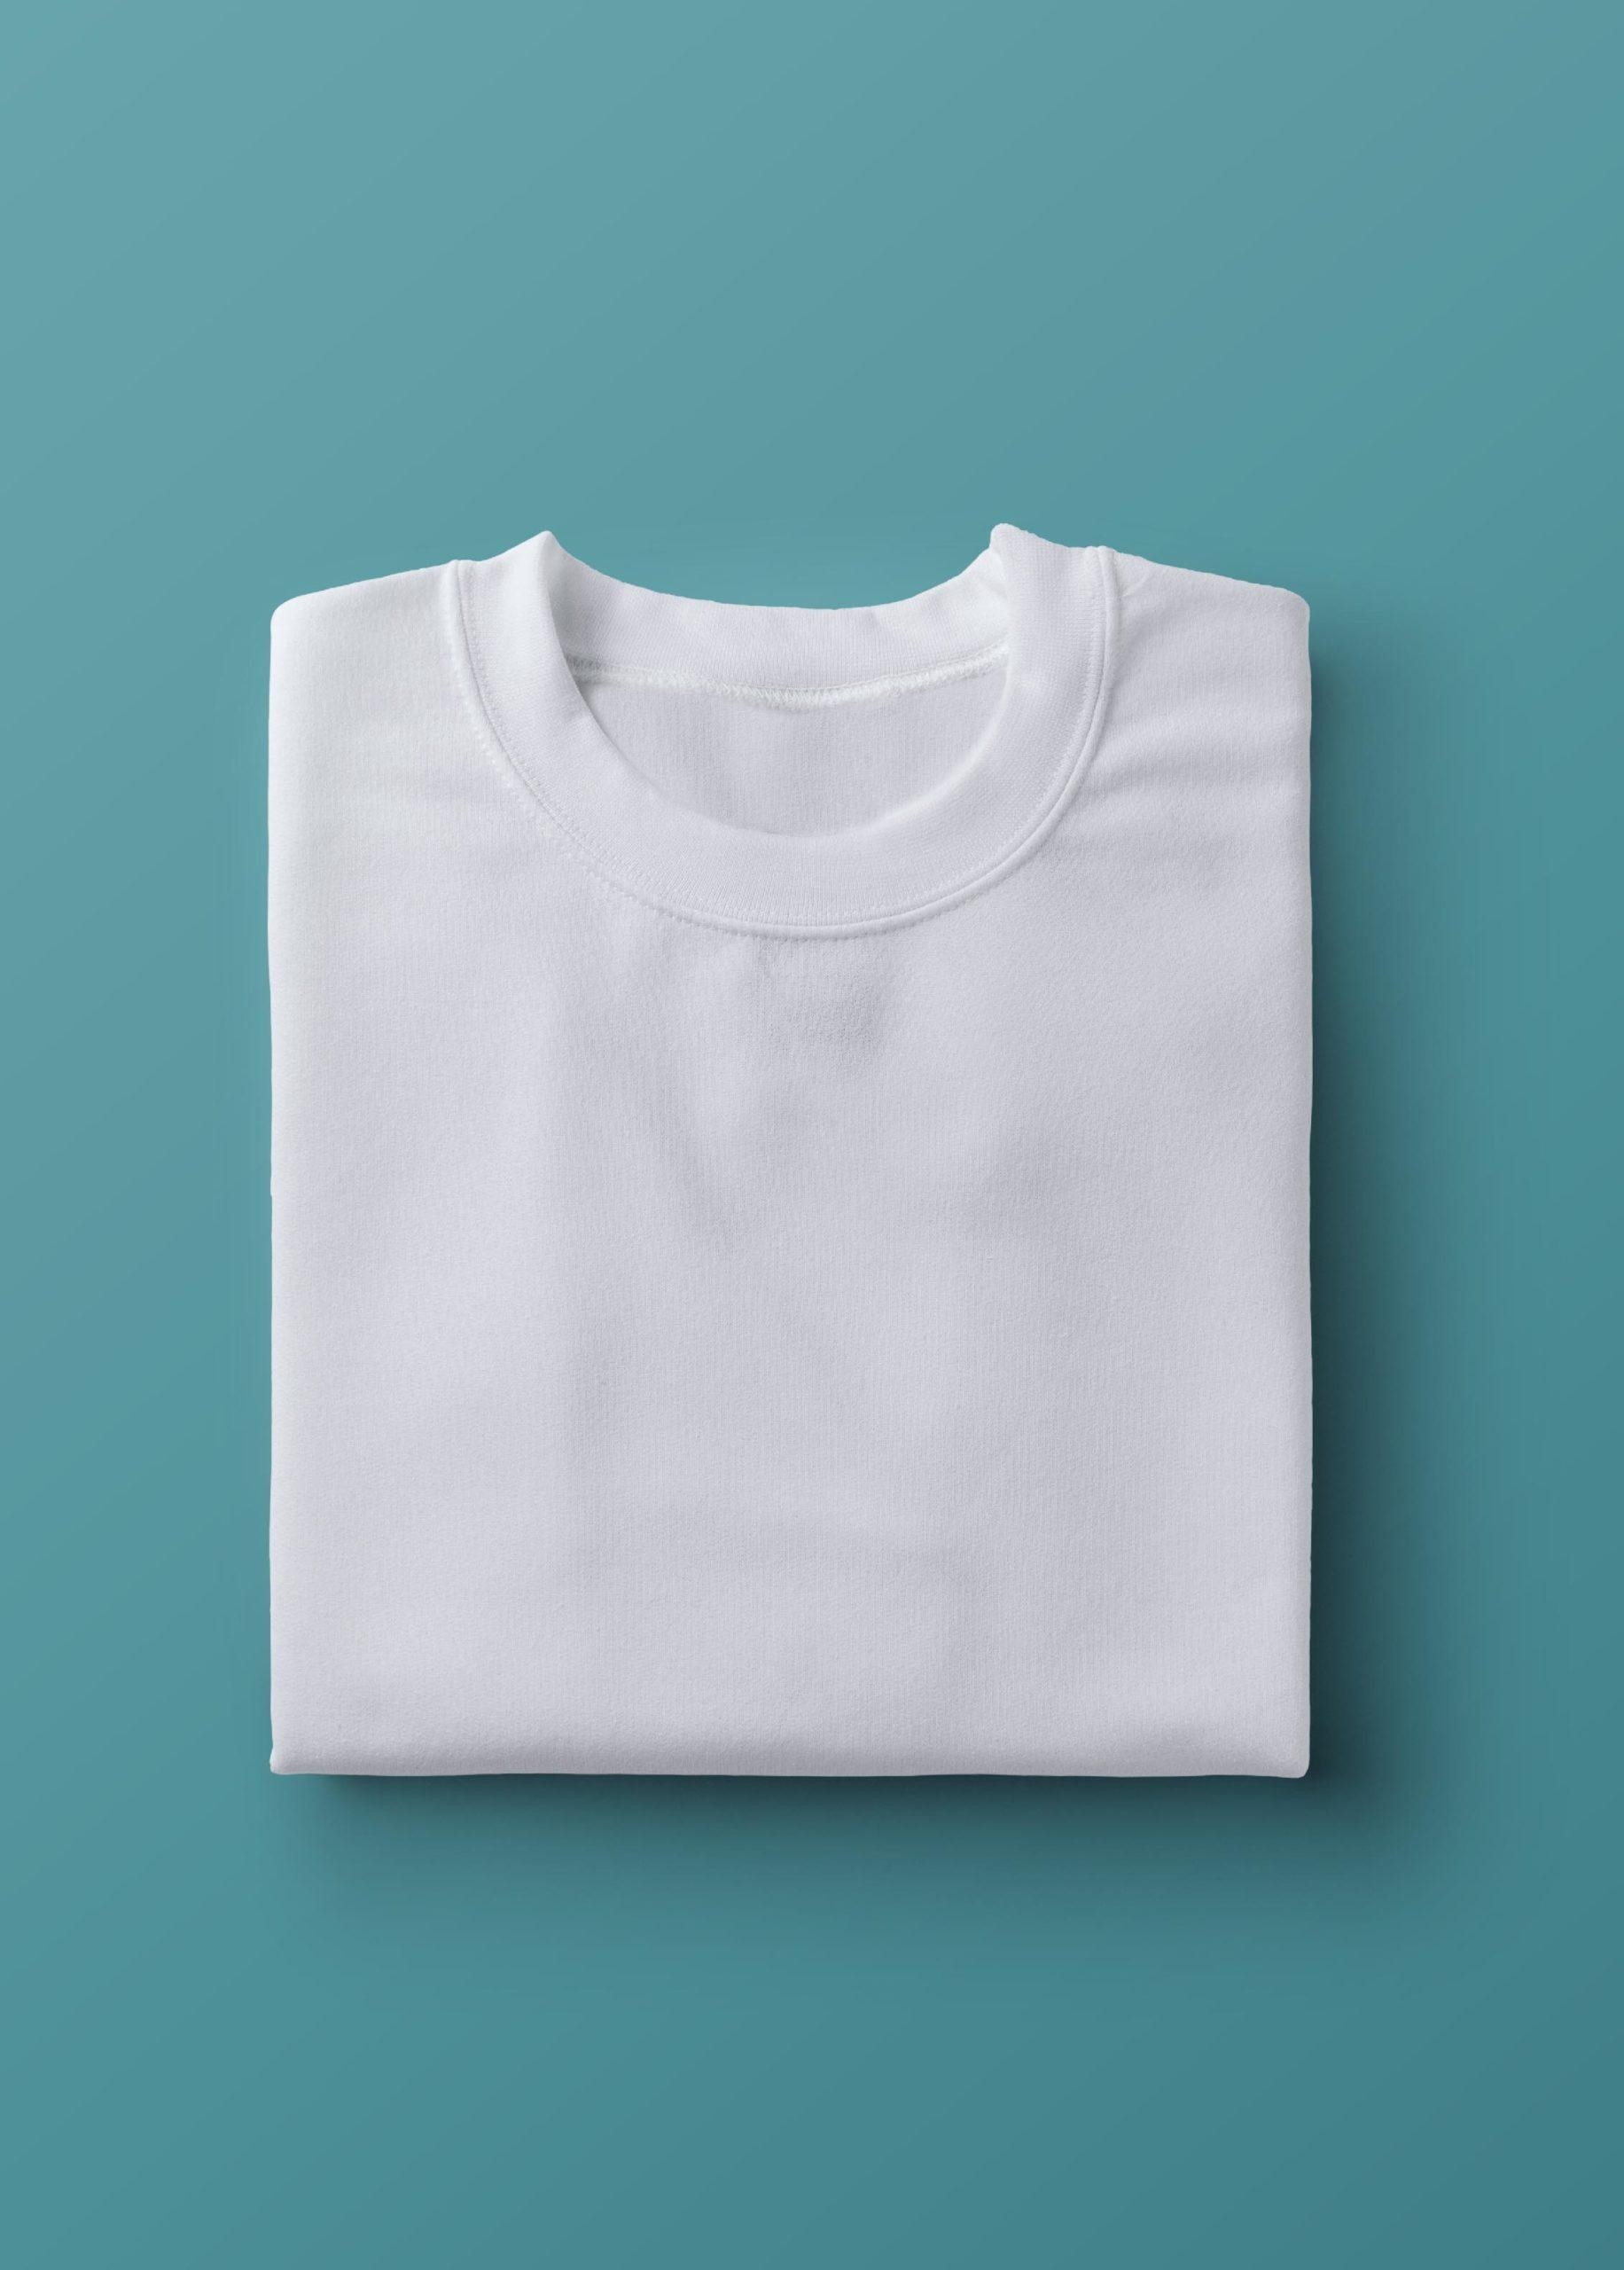 Plain White T Shirt CrazyMonk